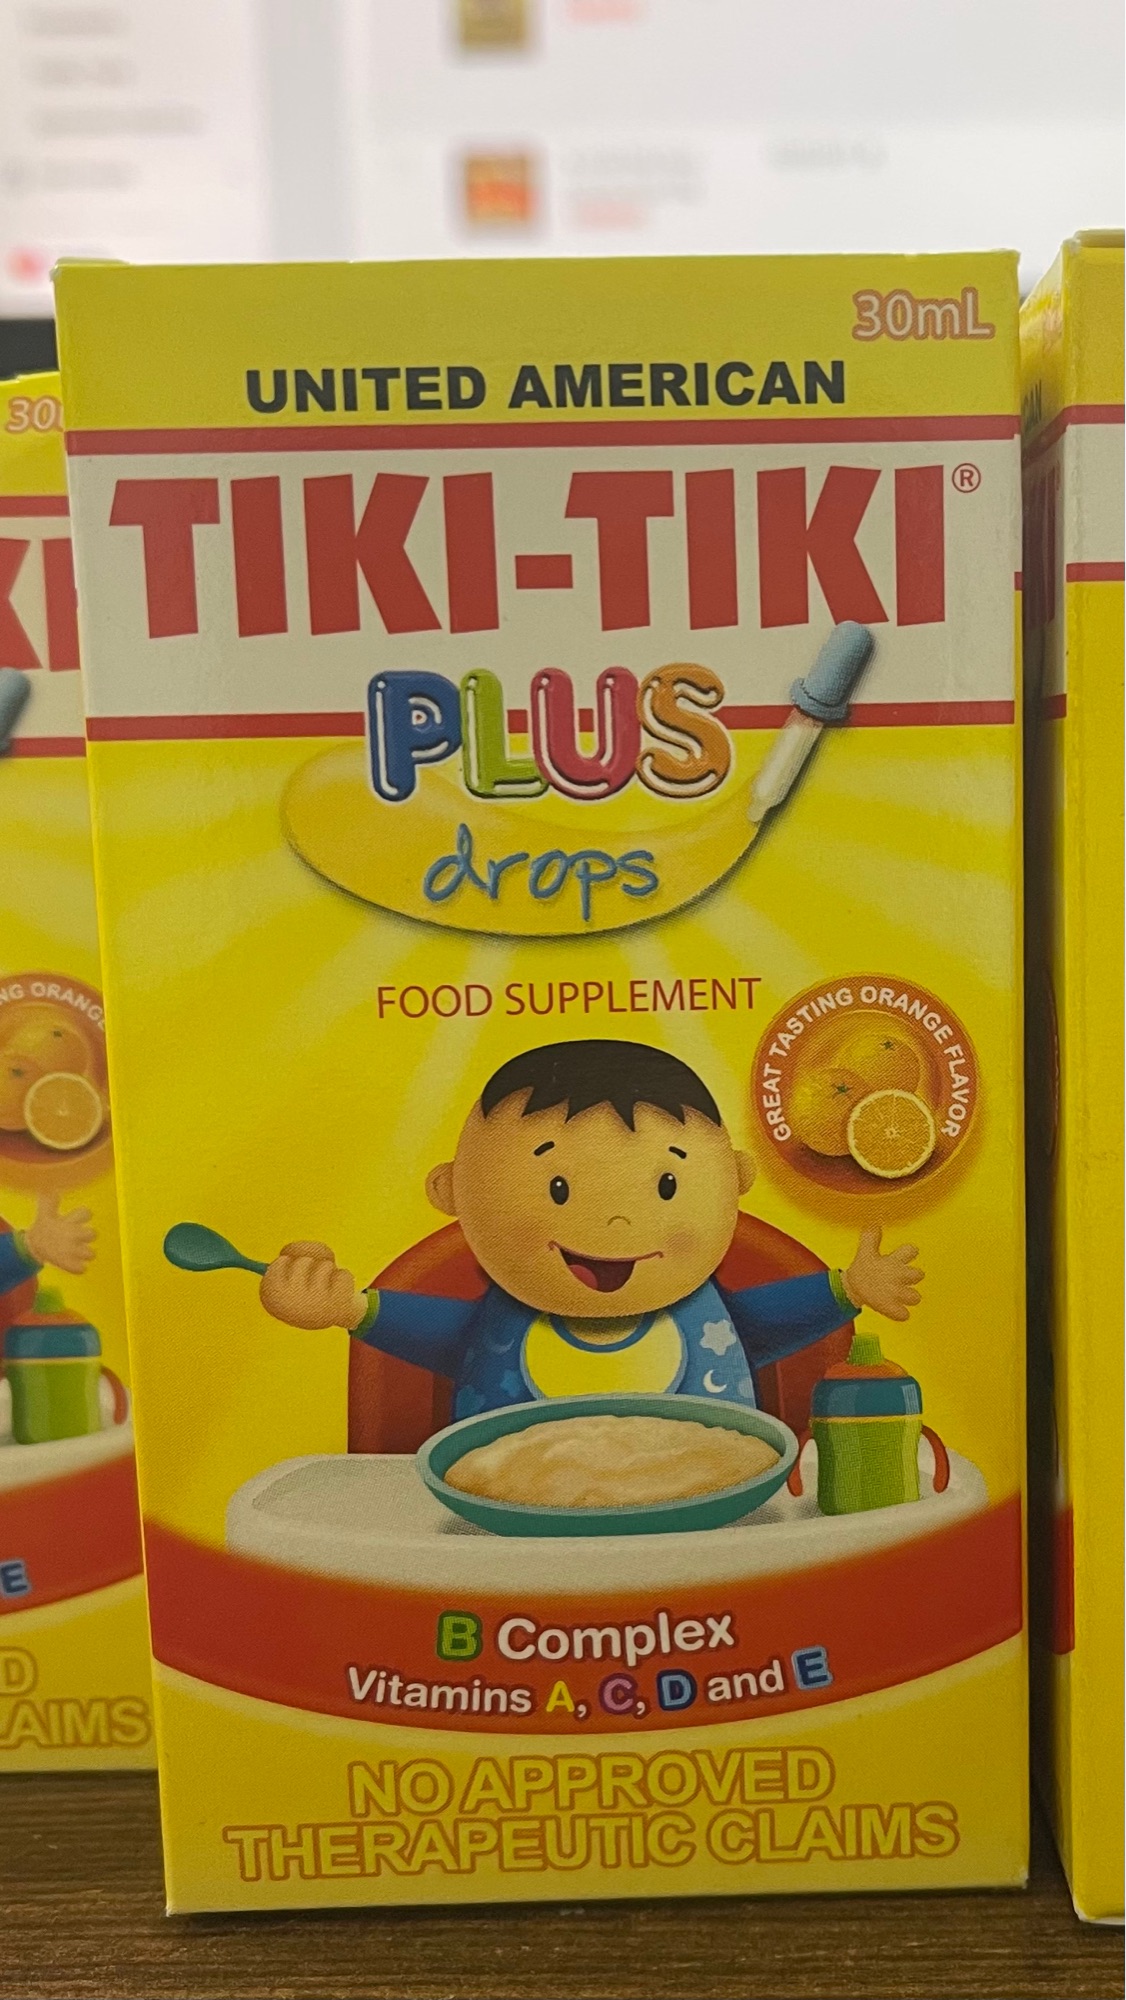 Tiki-Tiki Drops 30ml